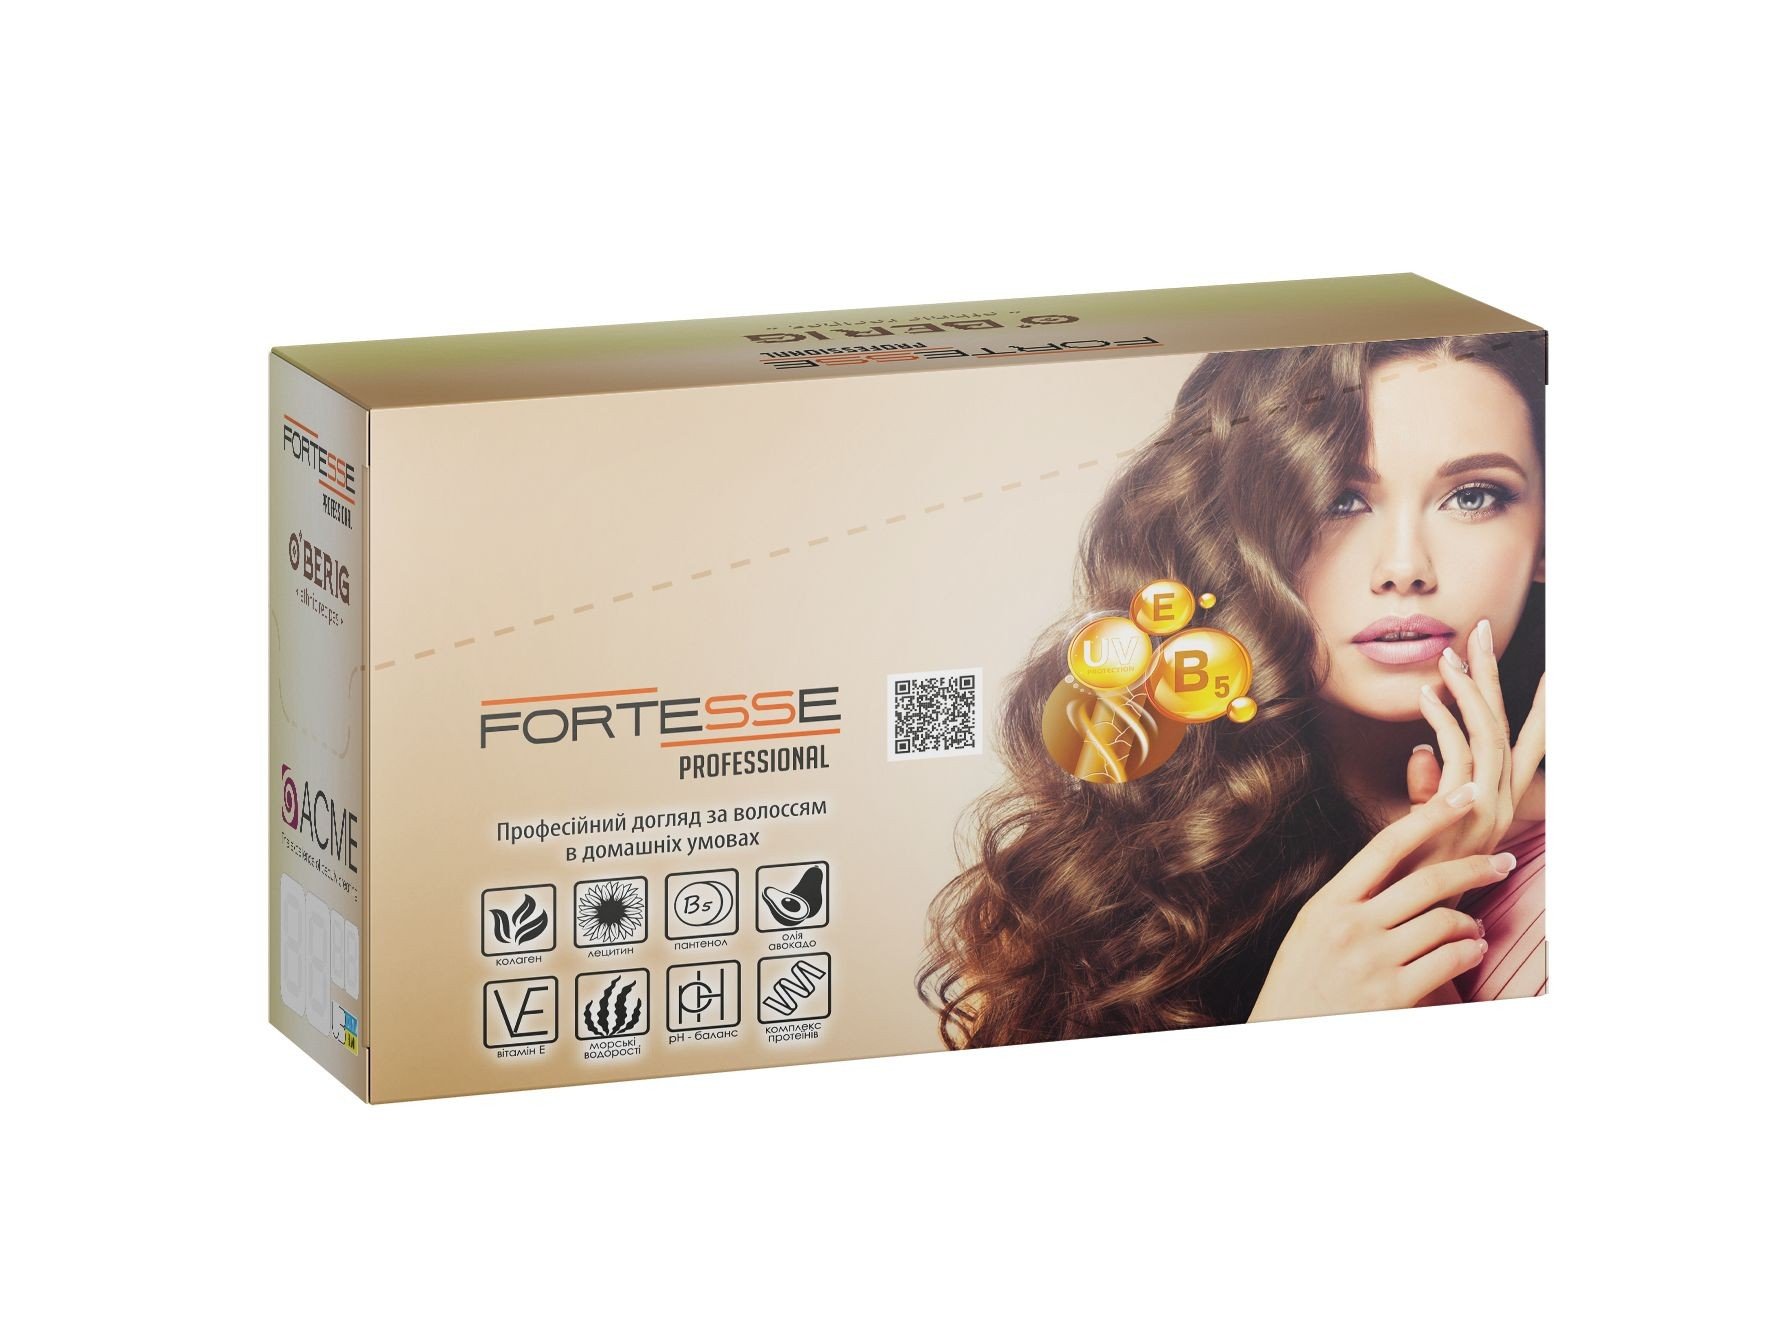 Шампунь Fortesse Professional Balance & Fresh, для всех типов волос, 15 мл - фото 4